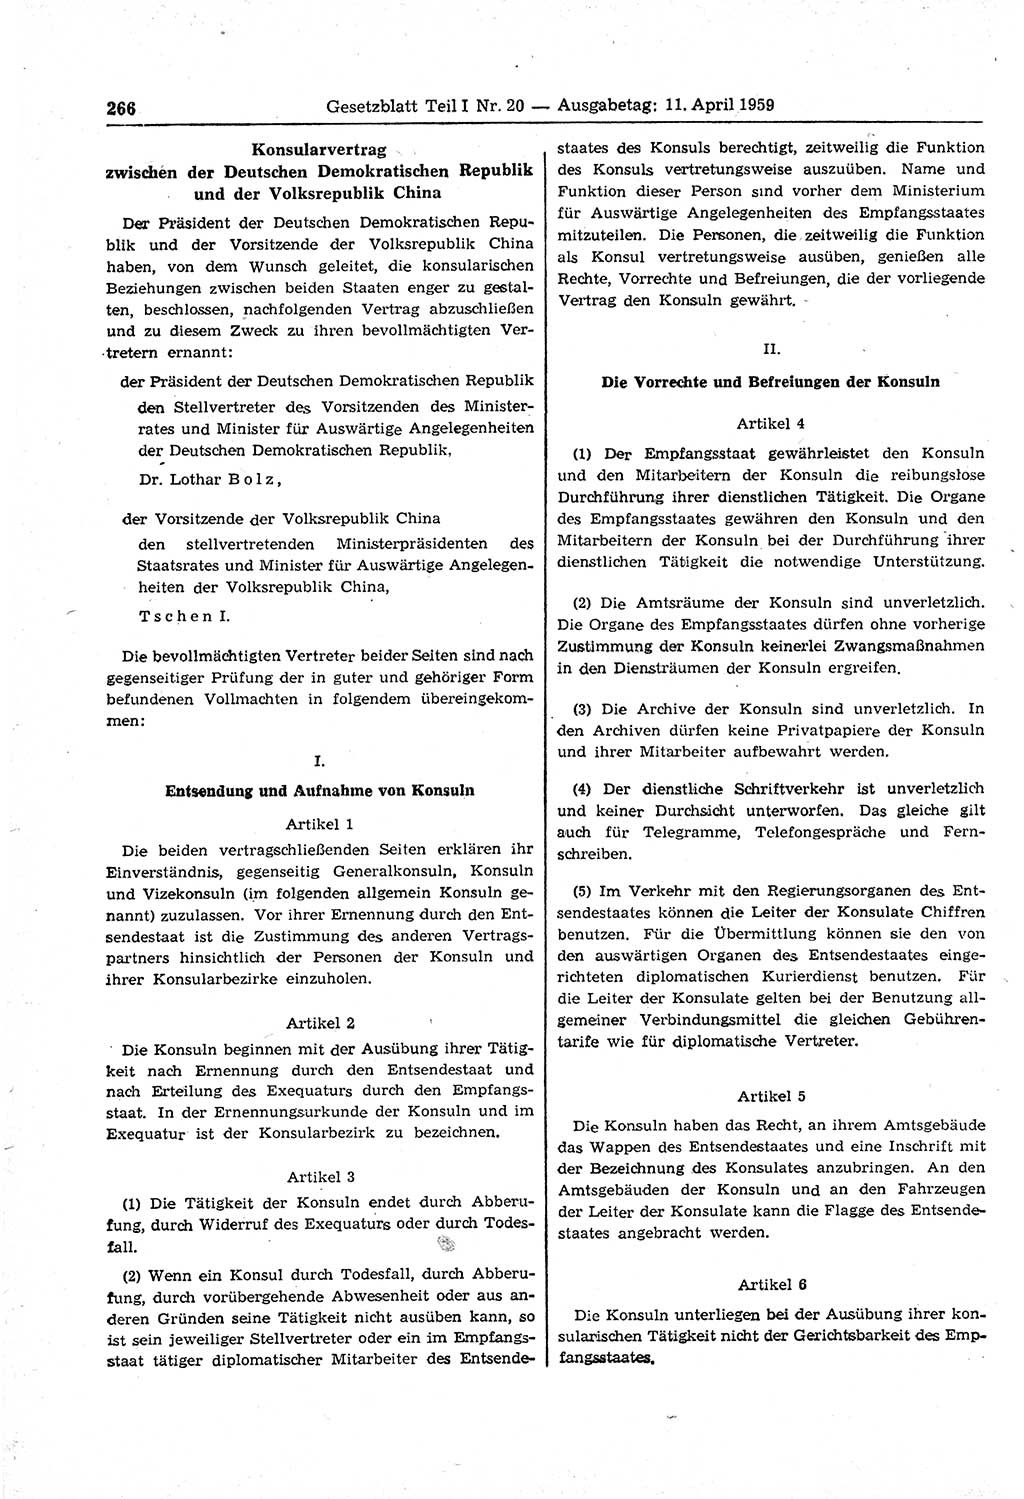 Gesetzblatt (GBl.) der Deutschen Demokratischen Republik (DDR) Teil Ⅰ 1959, Seite 266 (GBl. DDR Ⅰ 1959, S. 266)